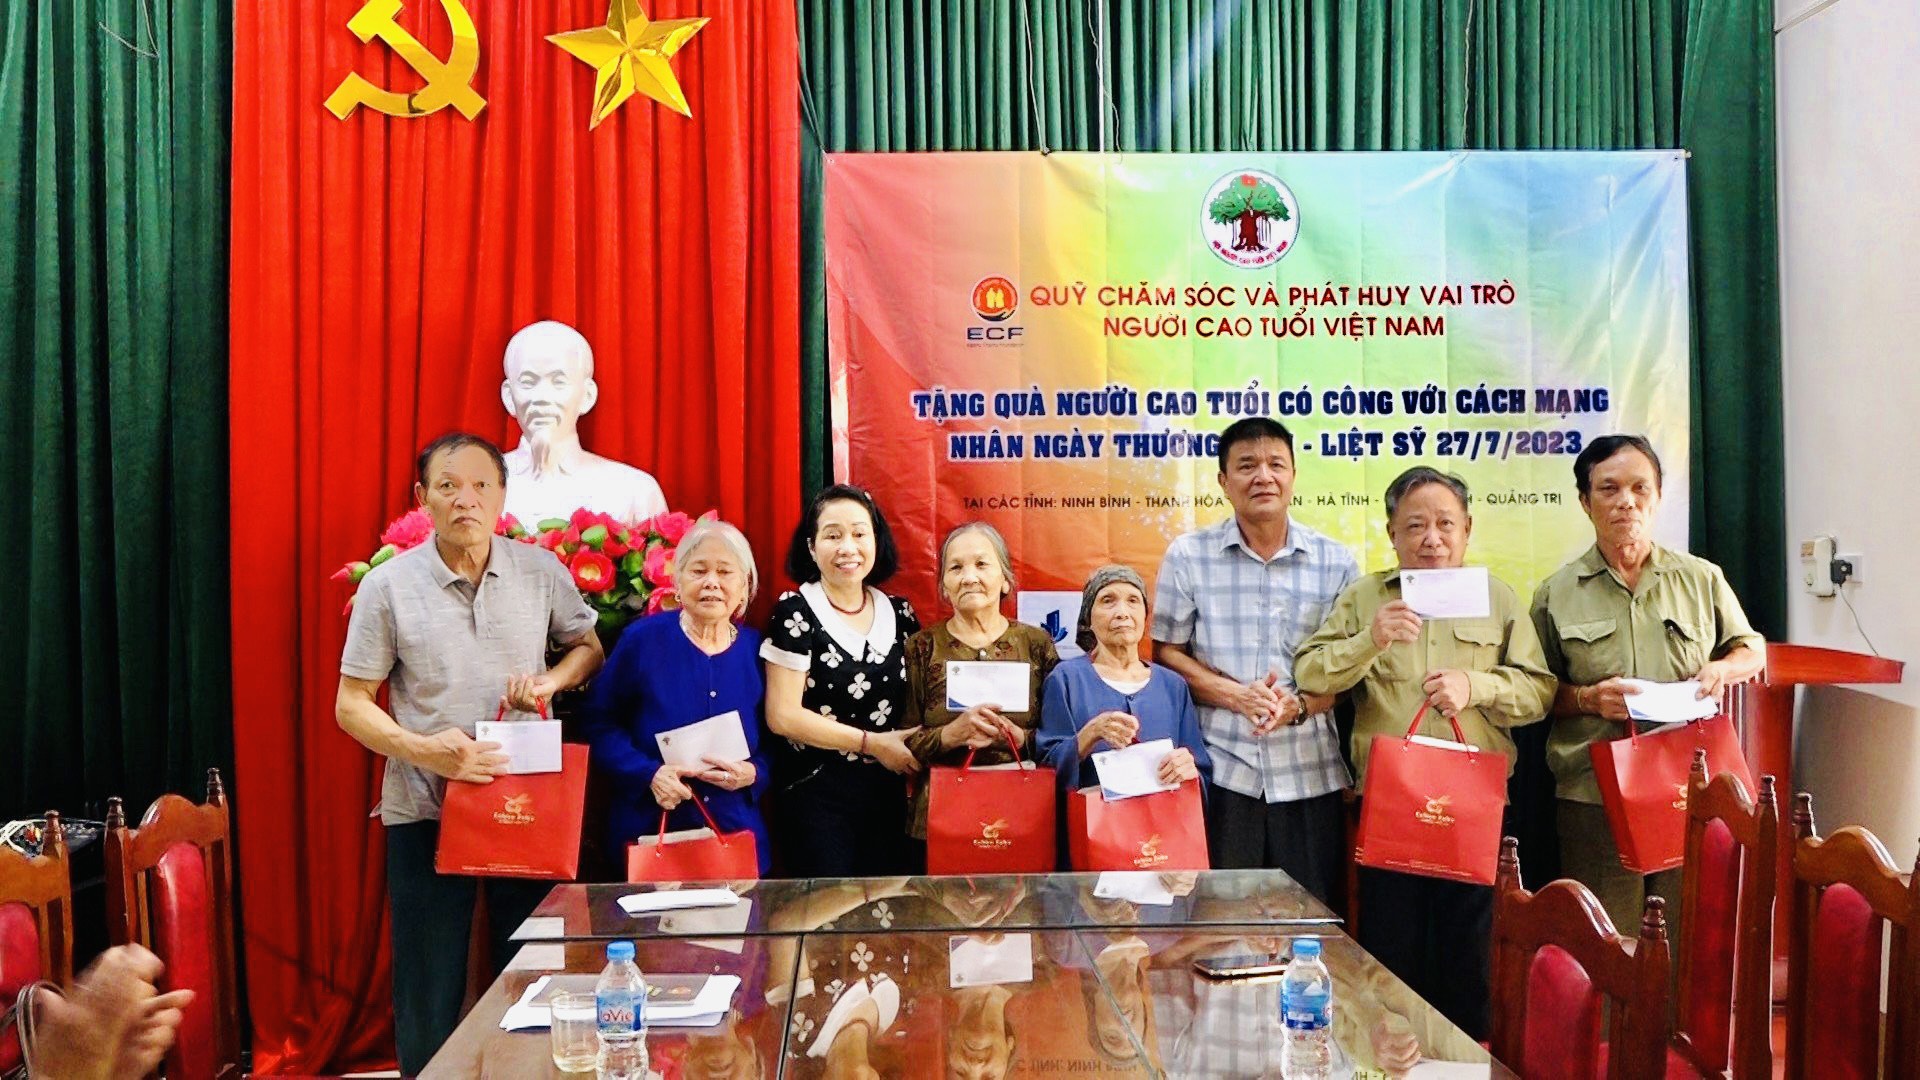 Đoàn công tác của Quỹ Chăm sóc và phát huy vai trò người cao tuổi Việt Nam thăm, tặng quà tại Thành phố Tam Điệp nhân ngày Thương binh liệt sỹ